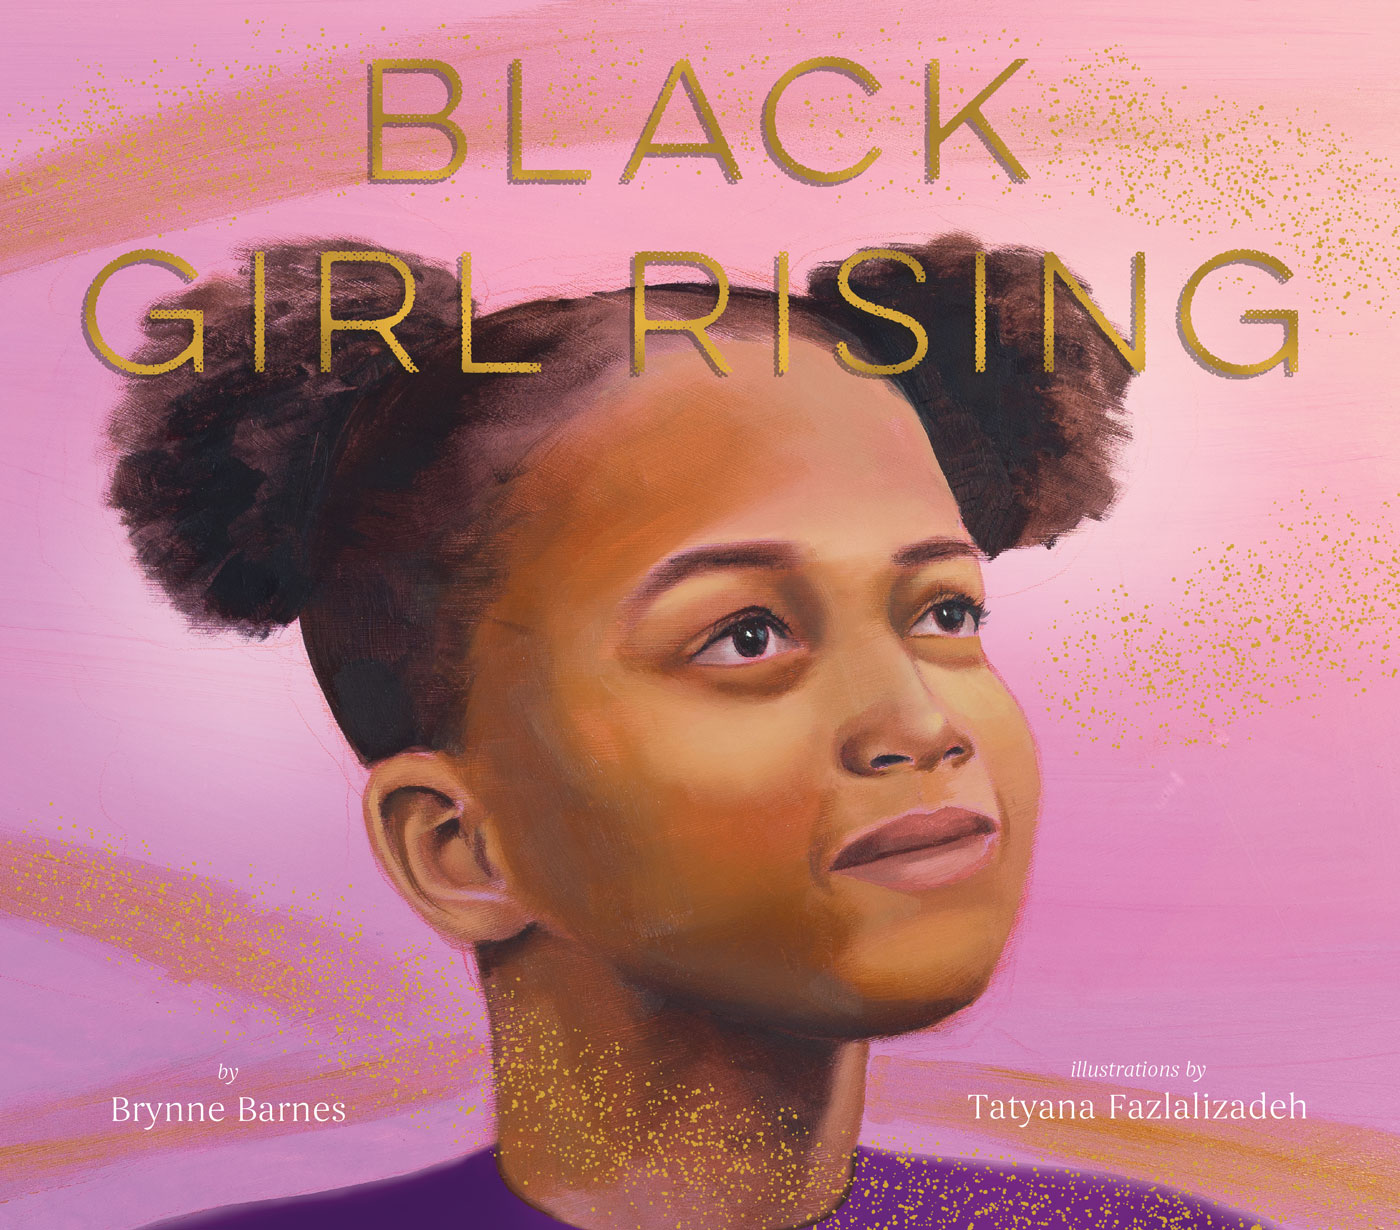 Black Girl Rising